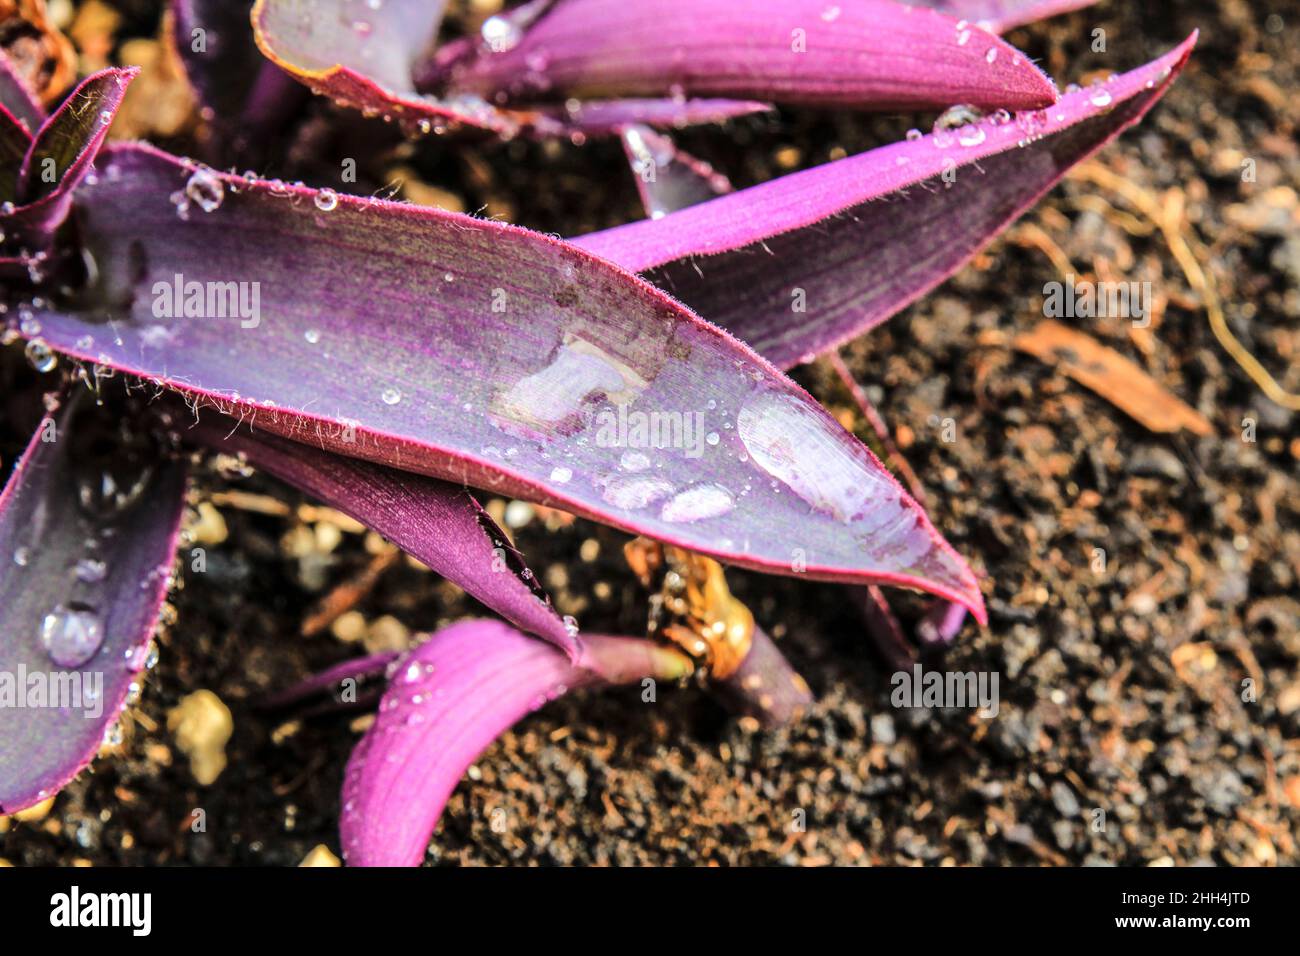 Tradescantia purpurea texture in the garden under the sun Stock Photo